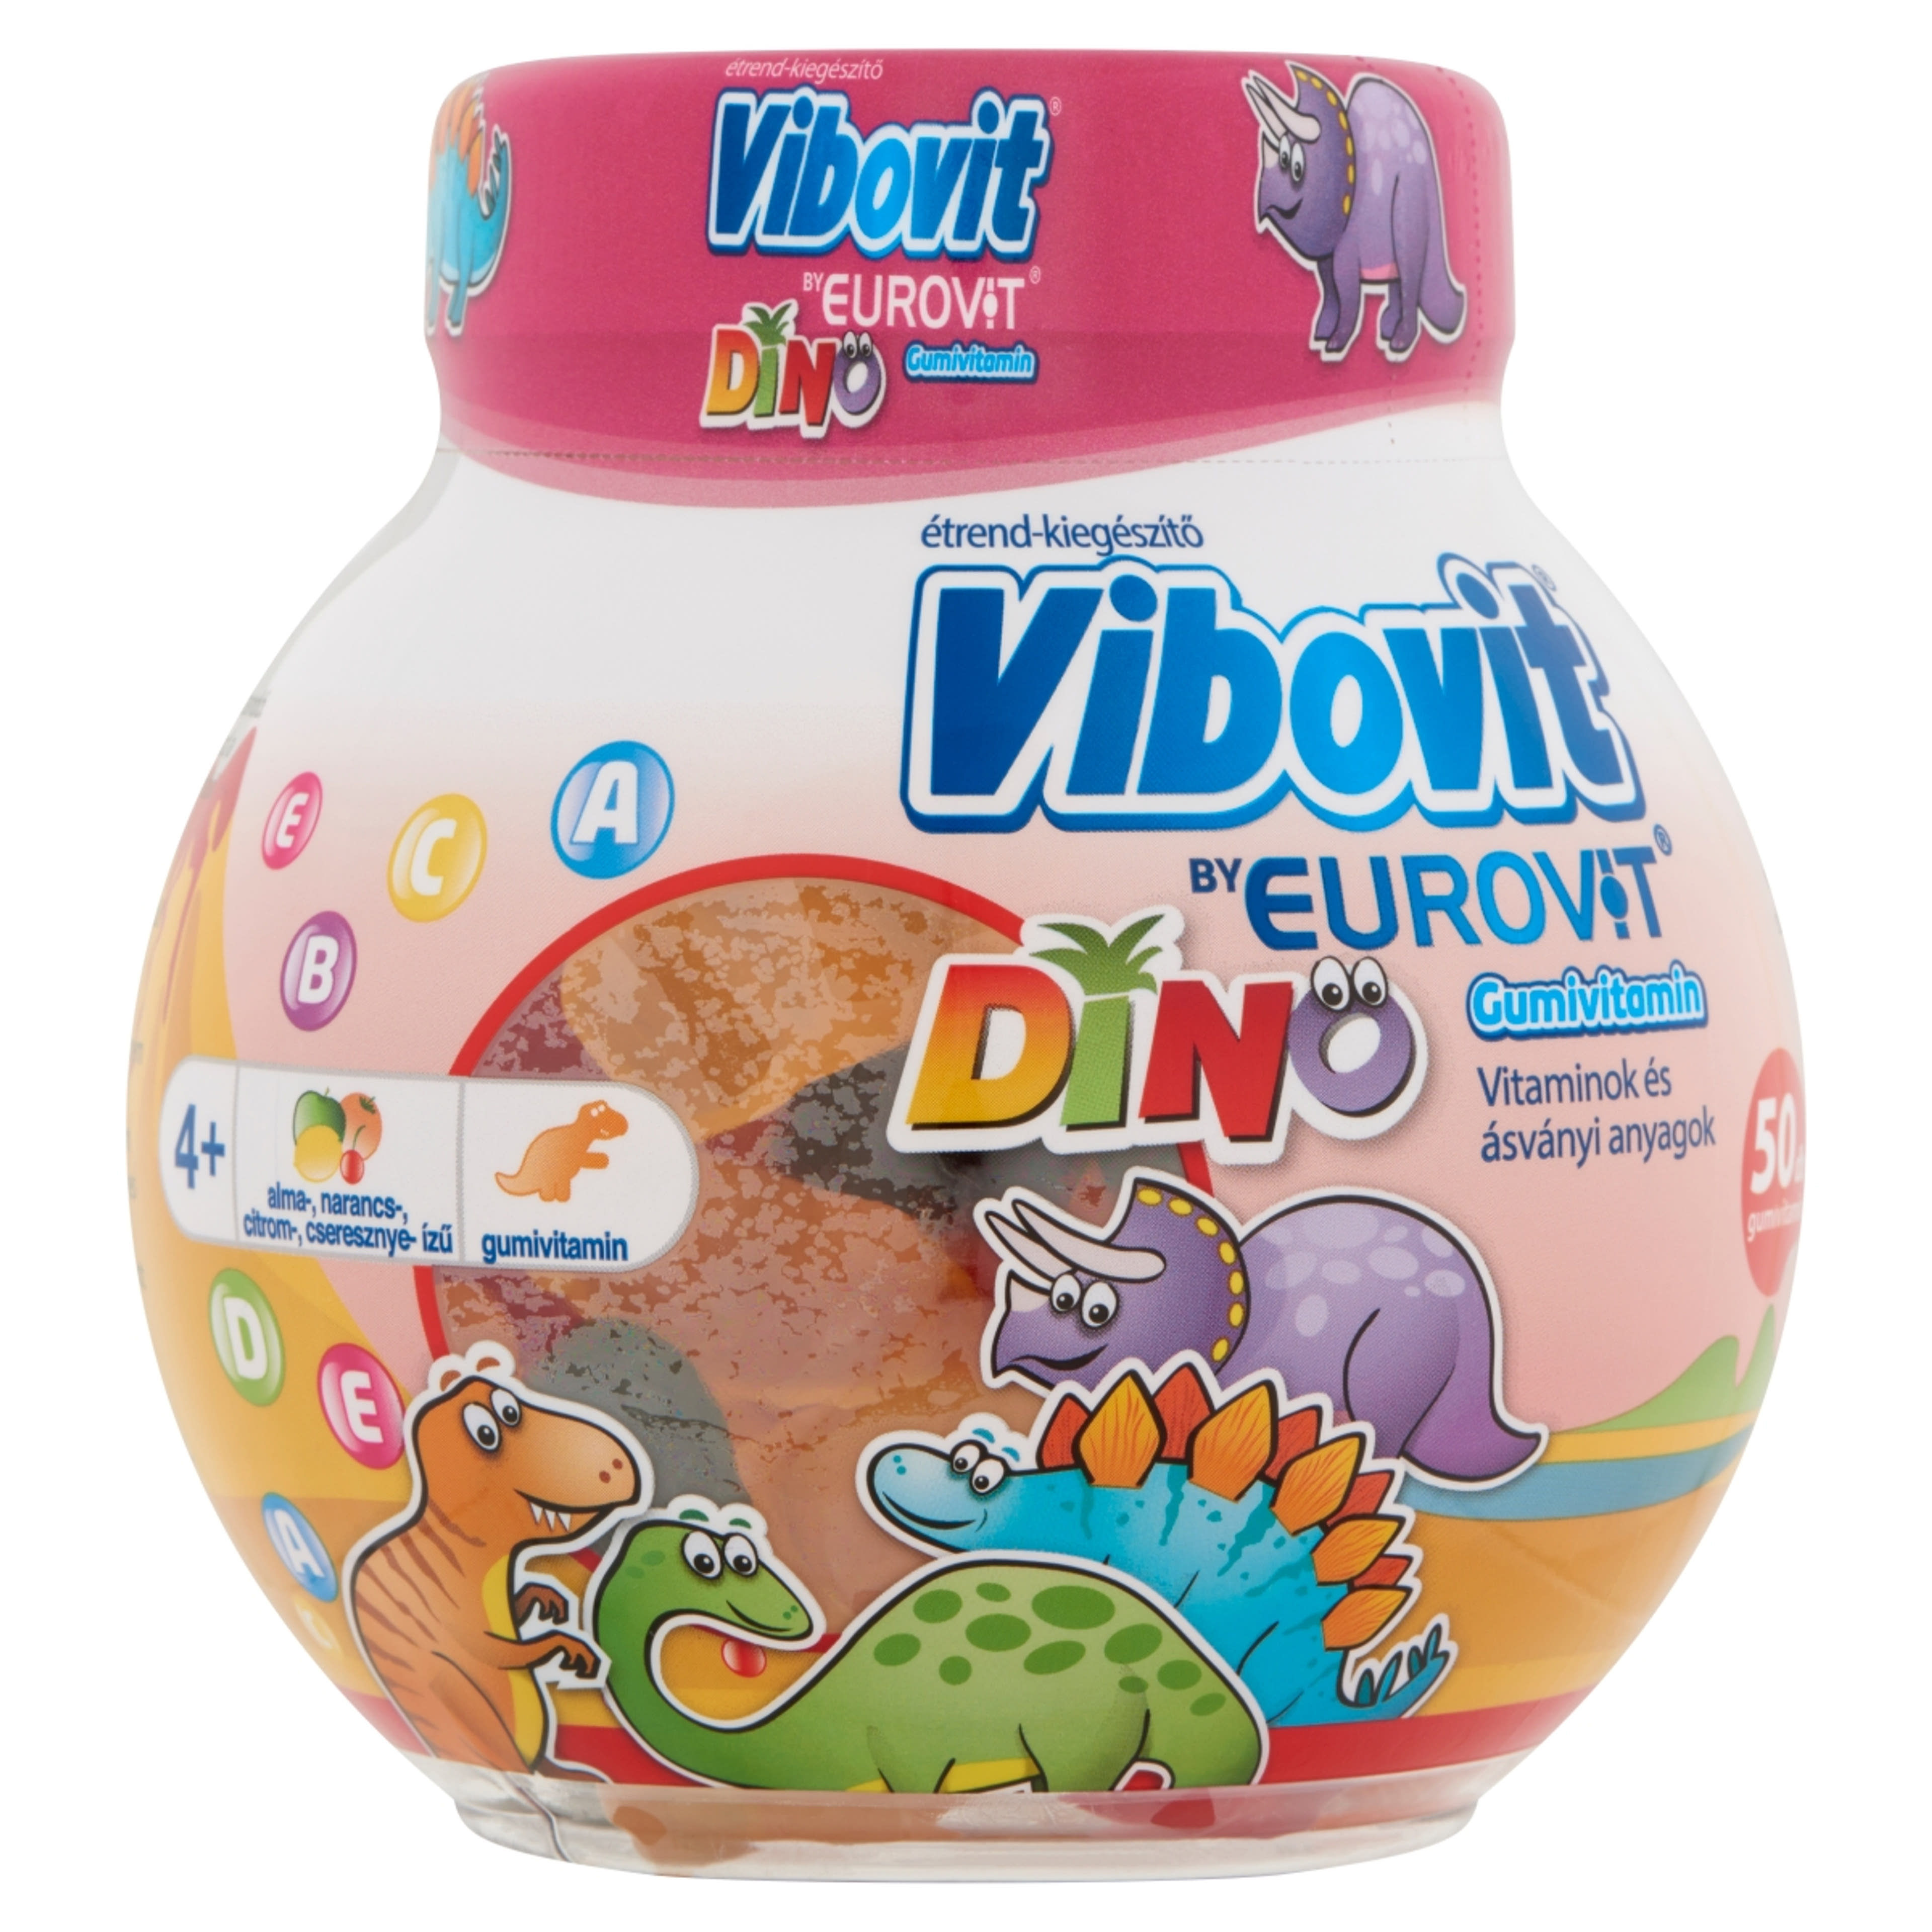 Vibovit Dino Gyümölcsös Ízű Gumivitamin - 50 db-1